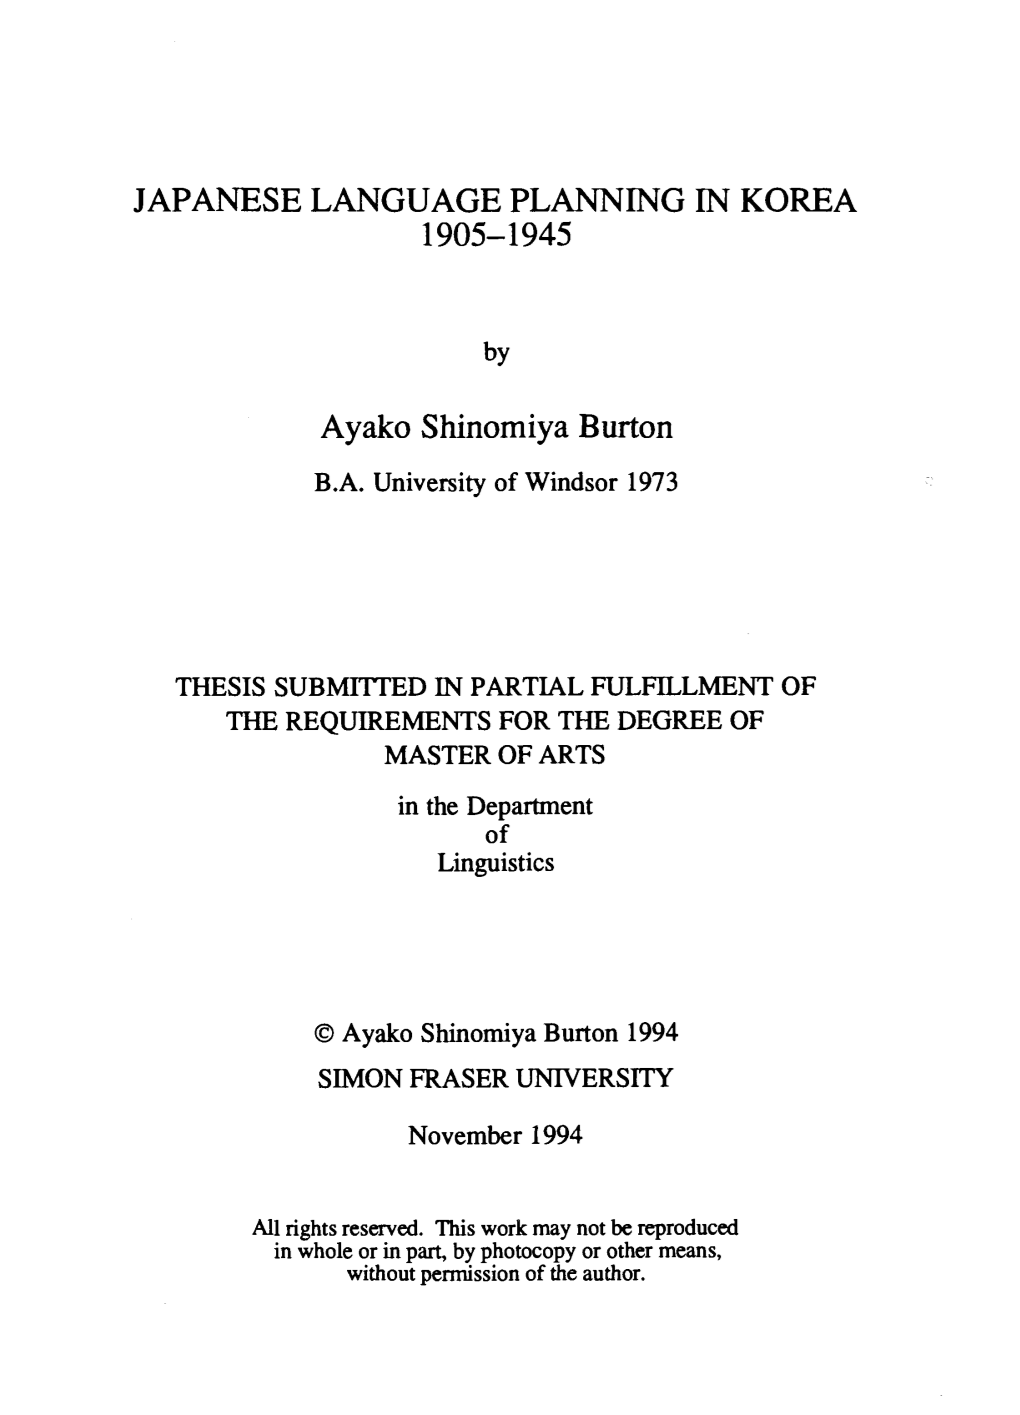 Japanese Language Planning in Korea, 1905-1945